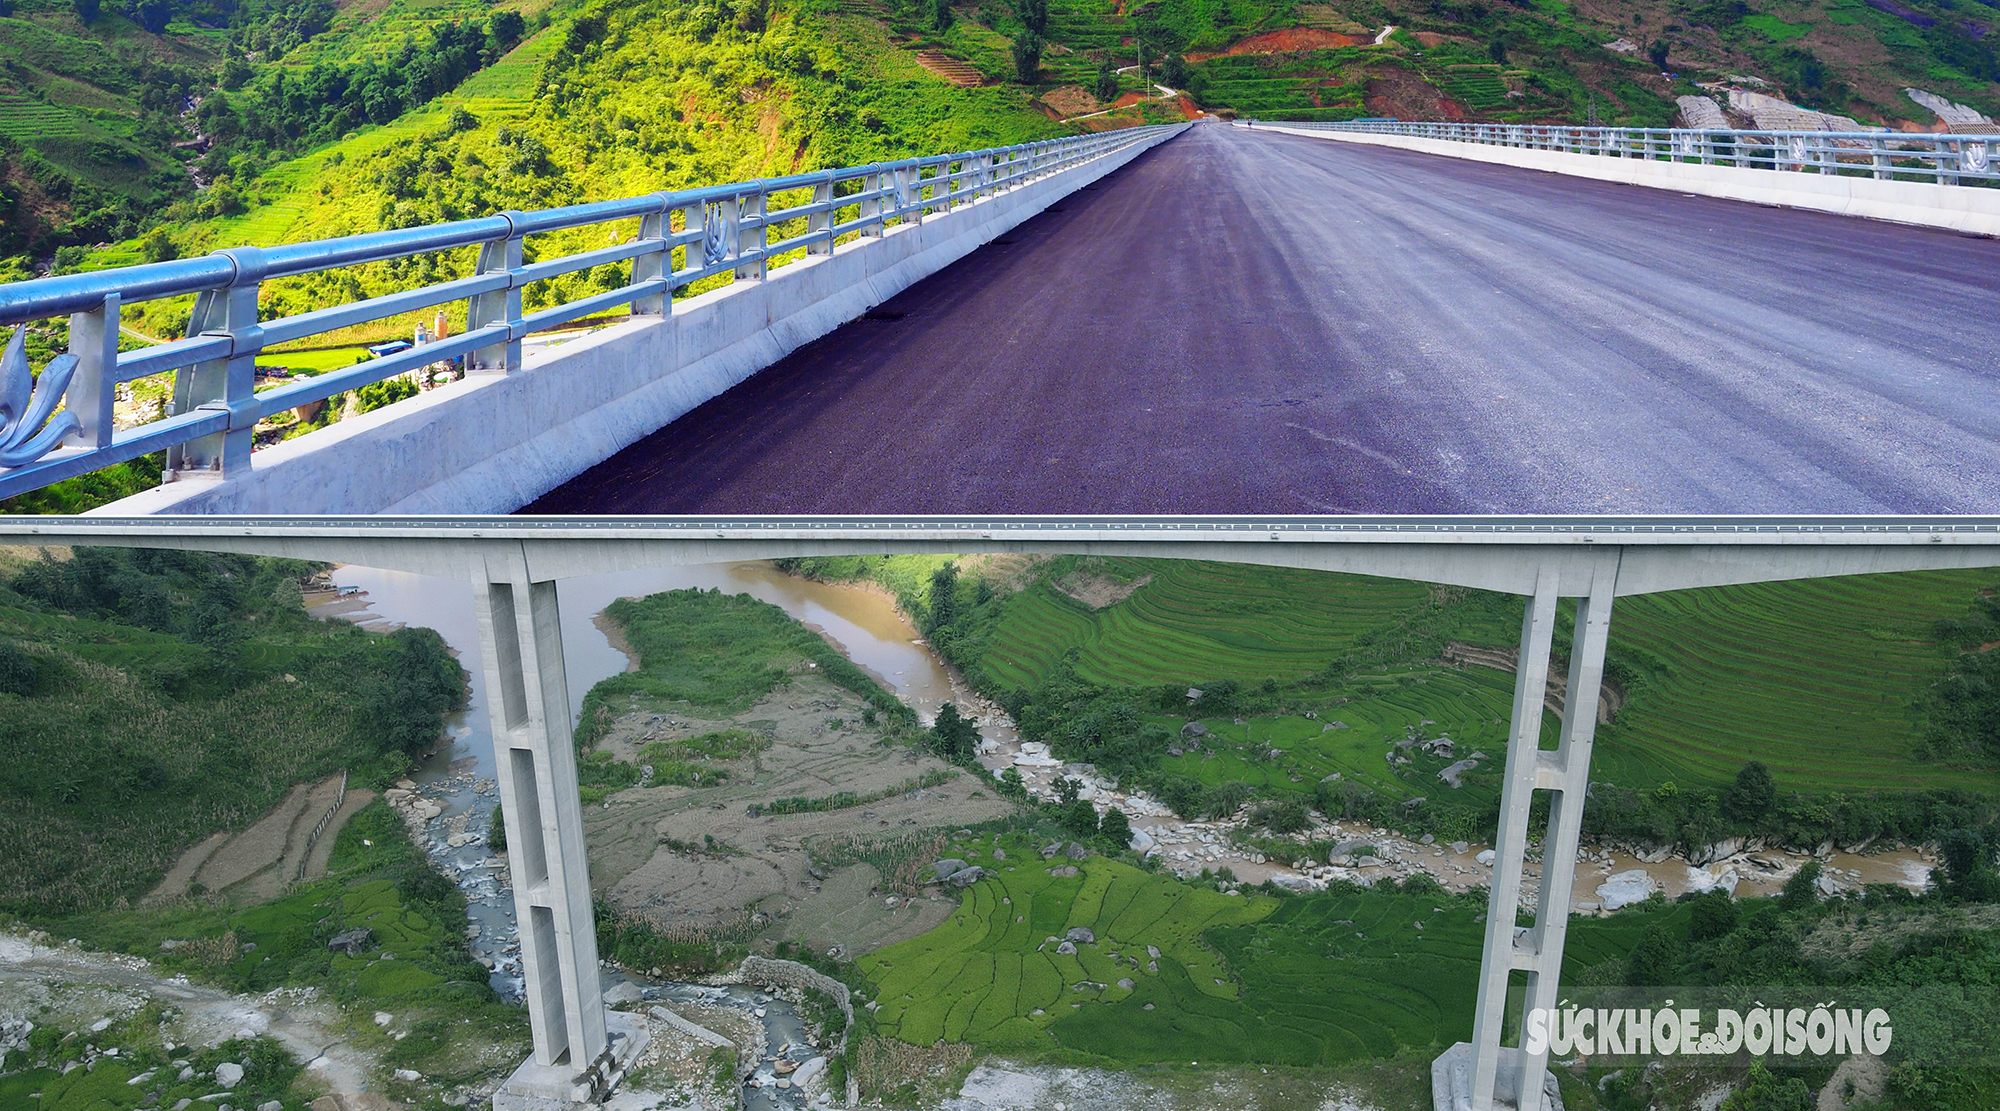 Ngắm cây cầu cạn có trụ cầu cao nhất Việt Nam ở Sa Pa  - Ảnh 5.